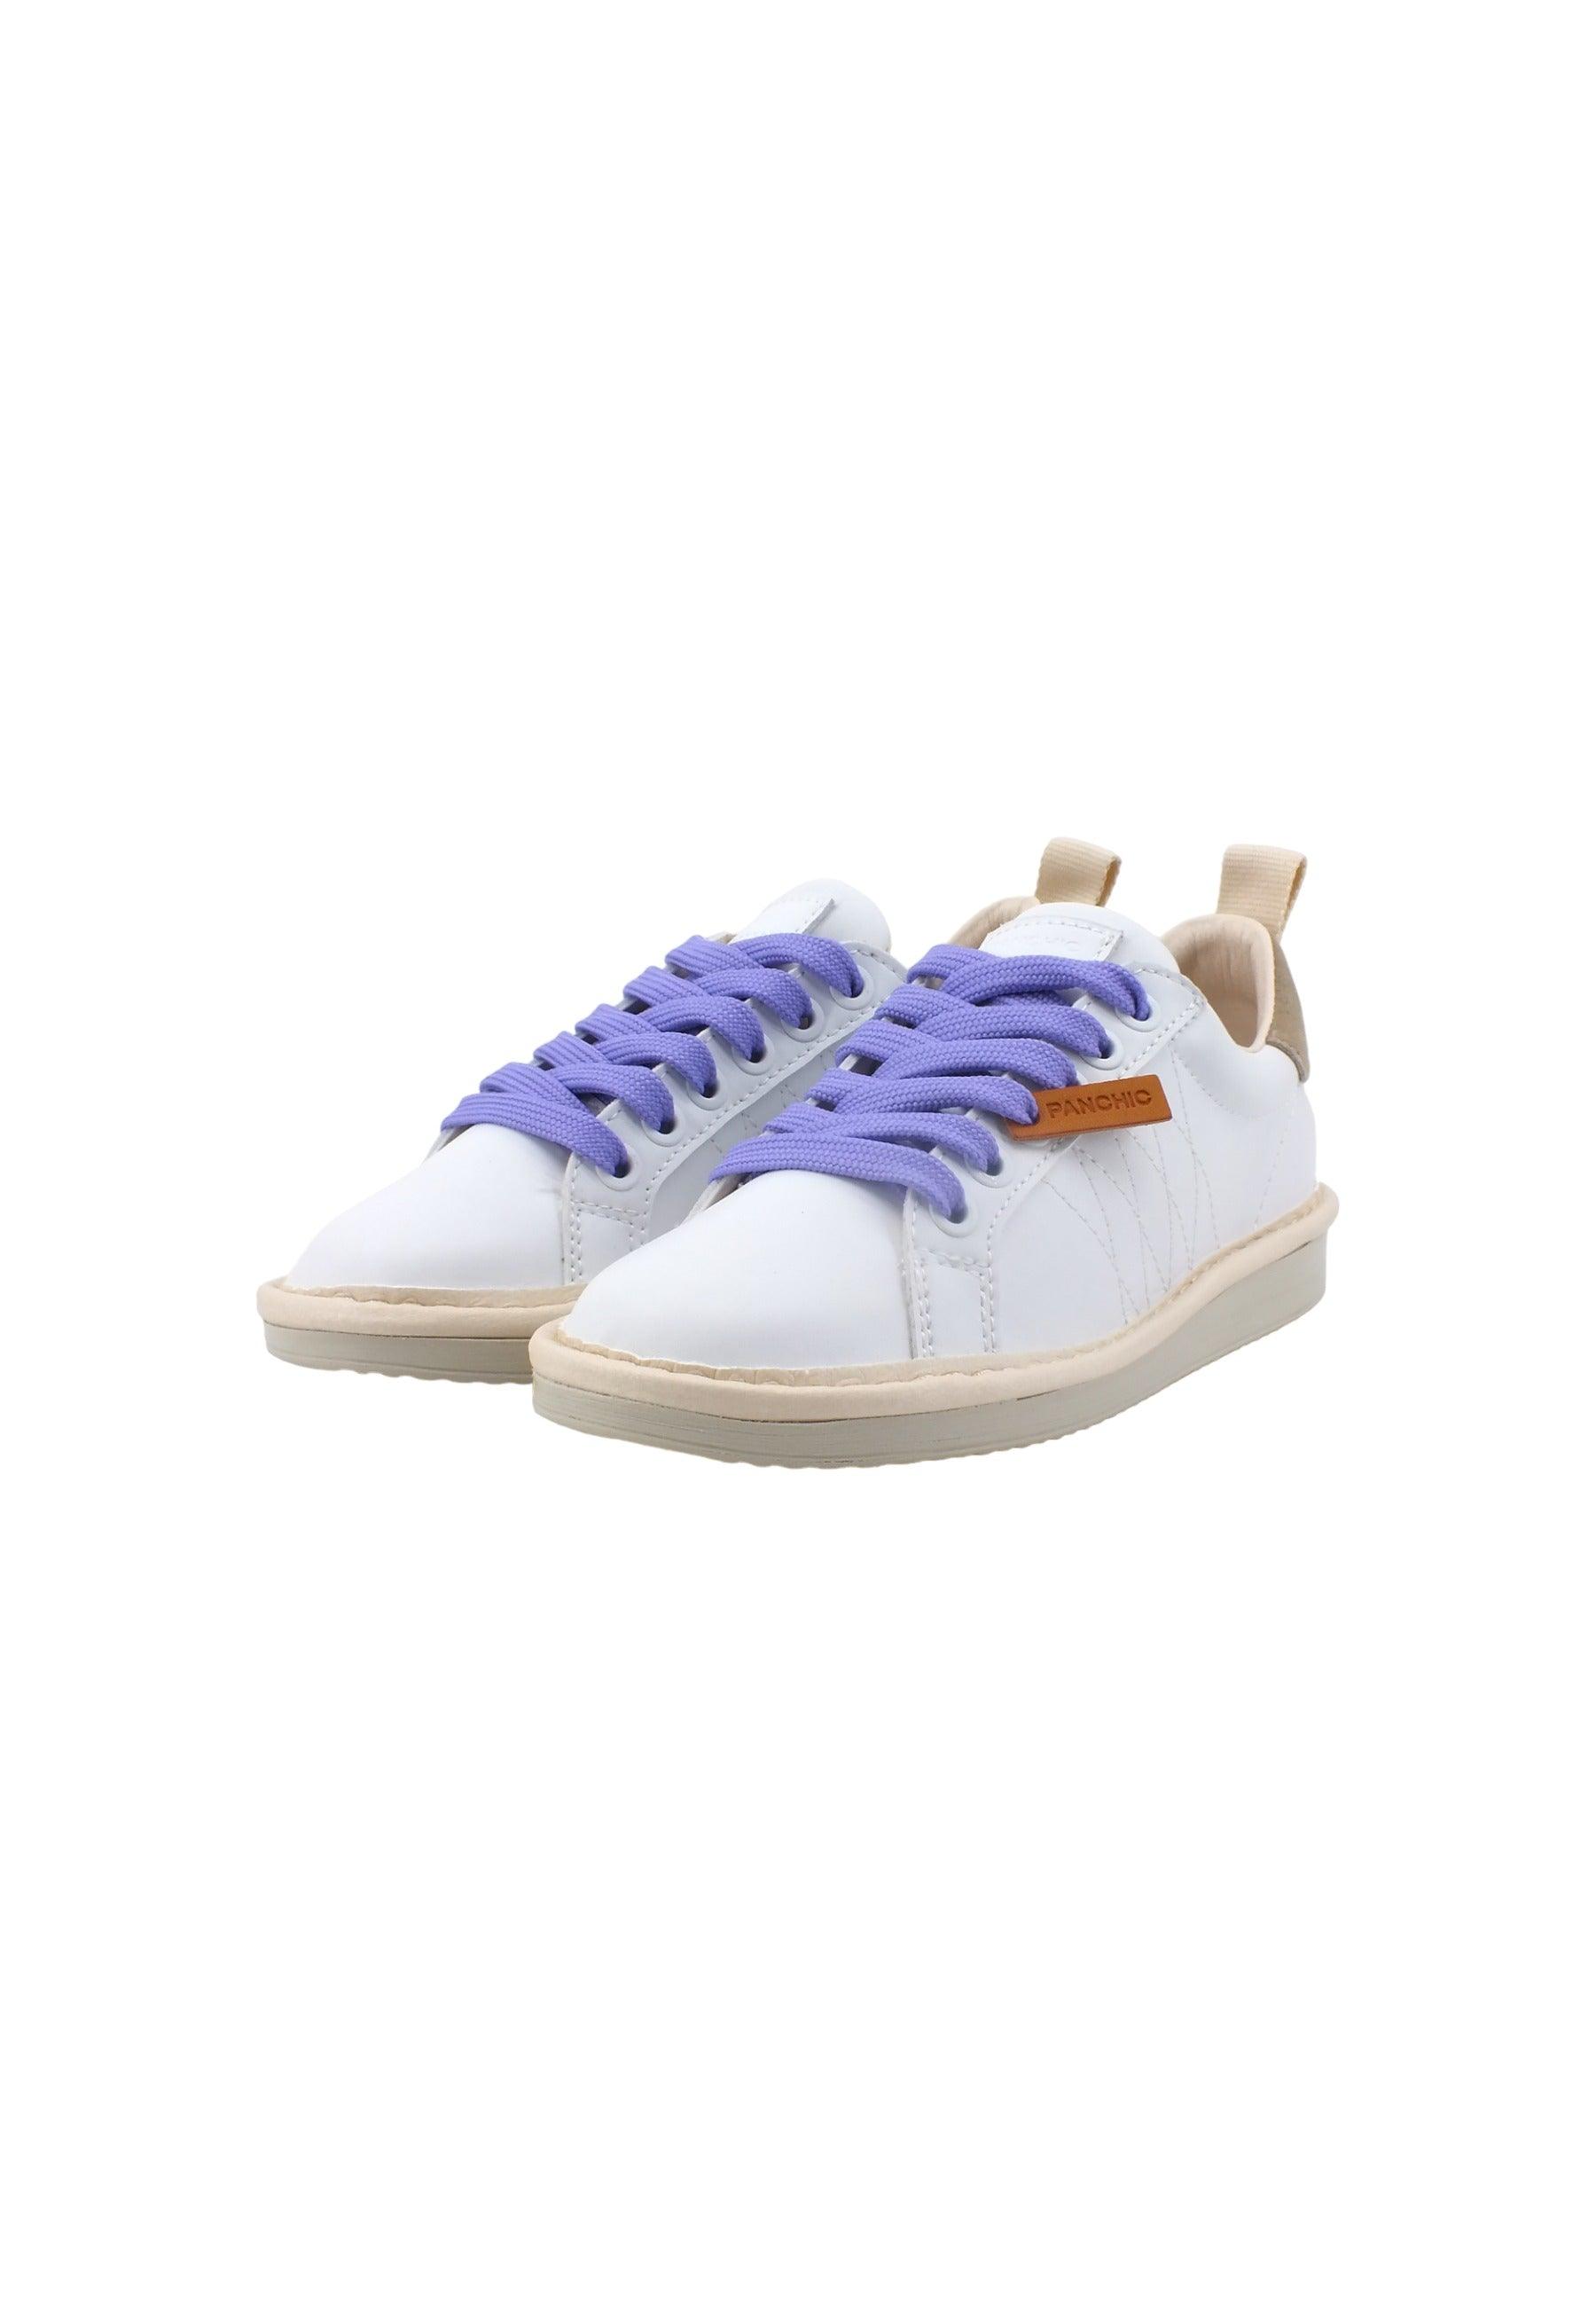 PAN CHIC Sneaker Bambino White Fog Urban Violet P01K00200243006 - Sandrini Calzature e Abbigliamento